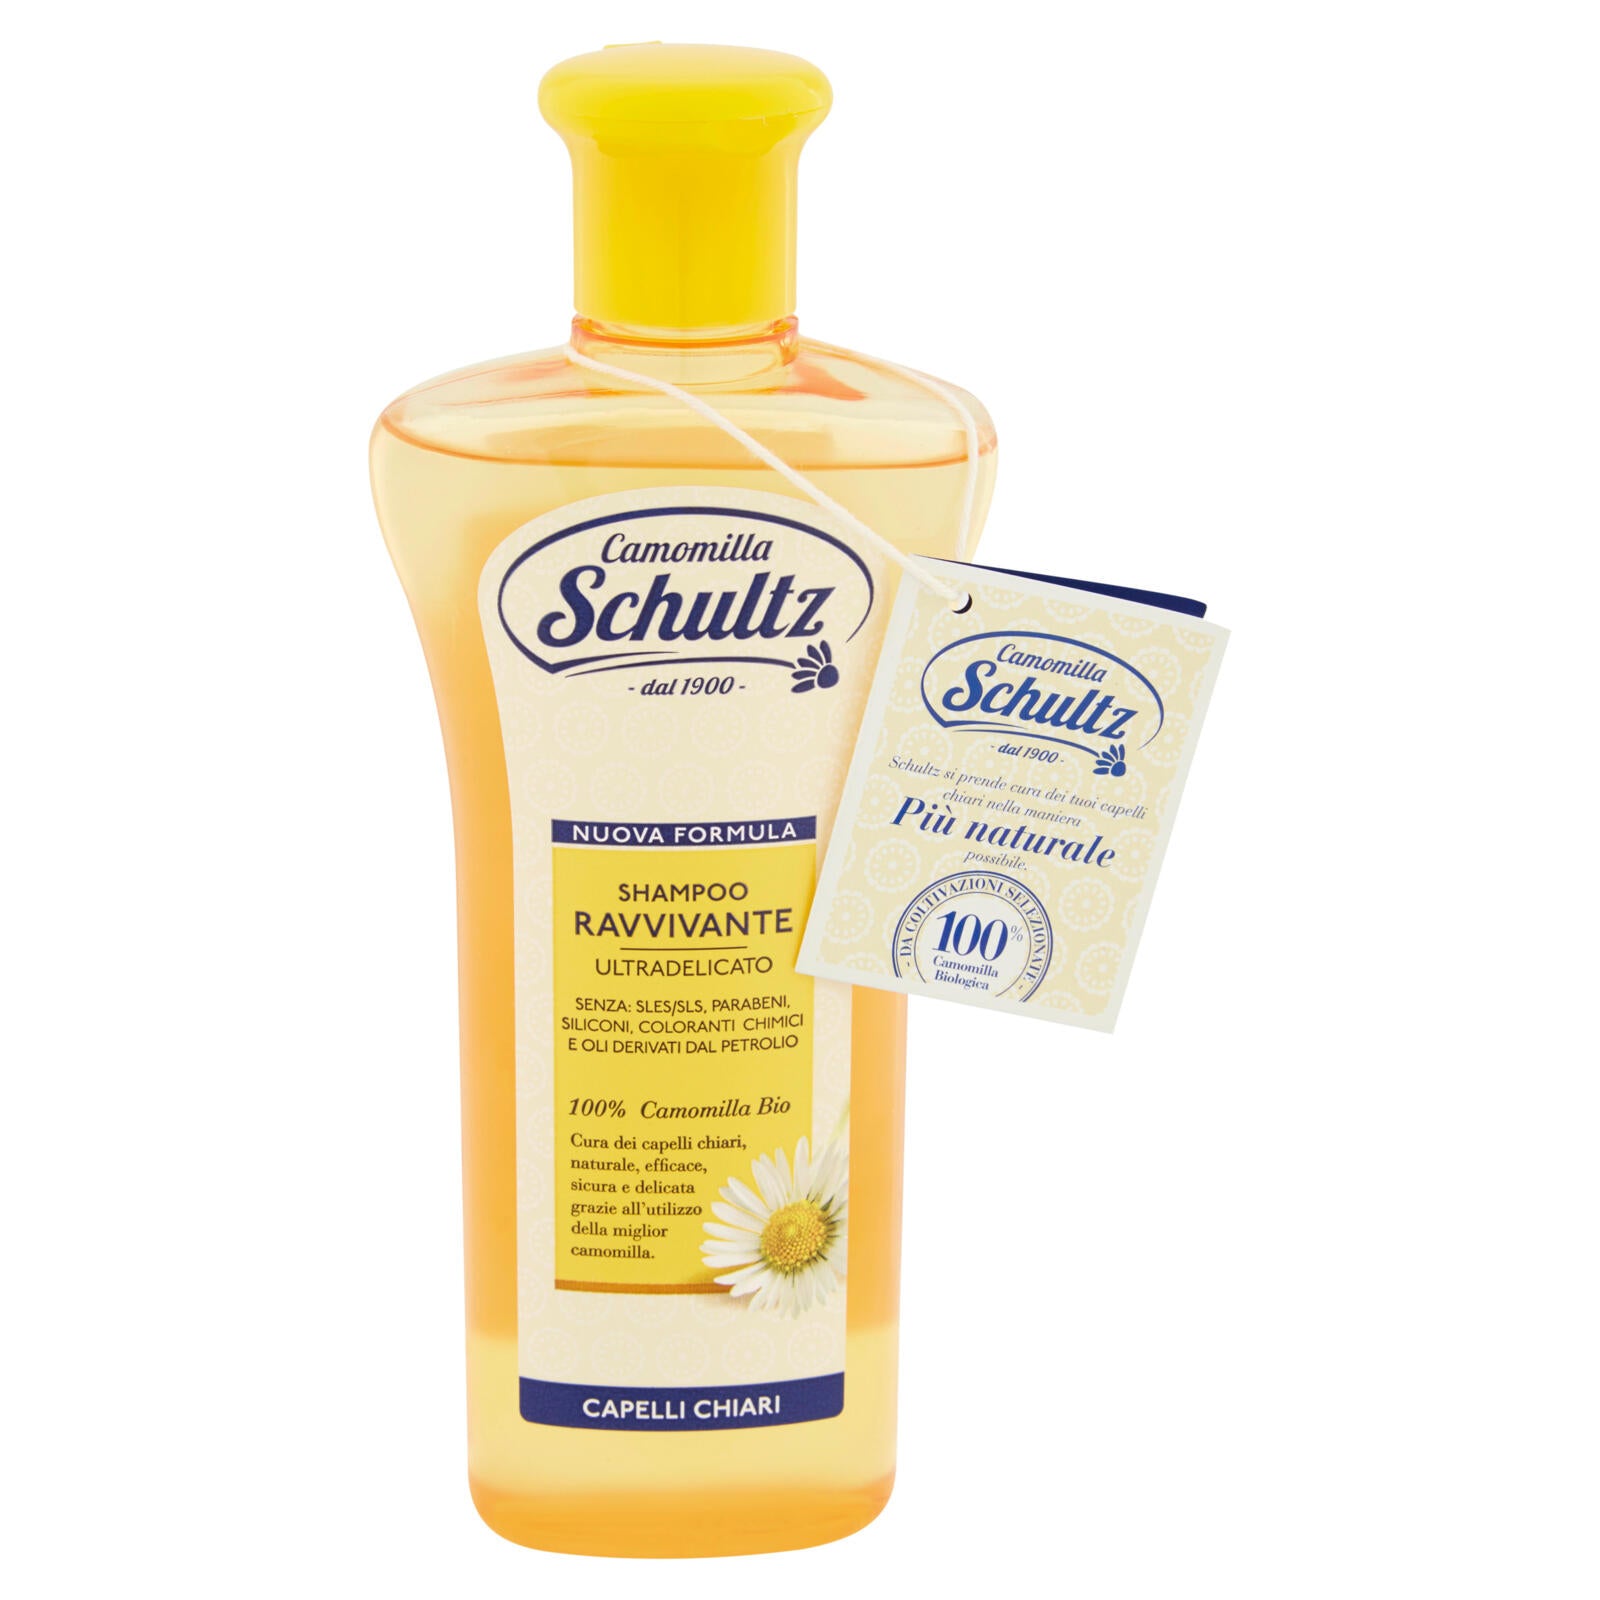 Camomilla Schultz Shampoo ravvivante ultradelicato capelli chiari 250 ml